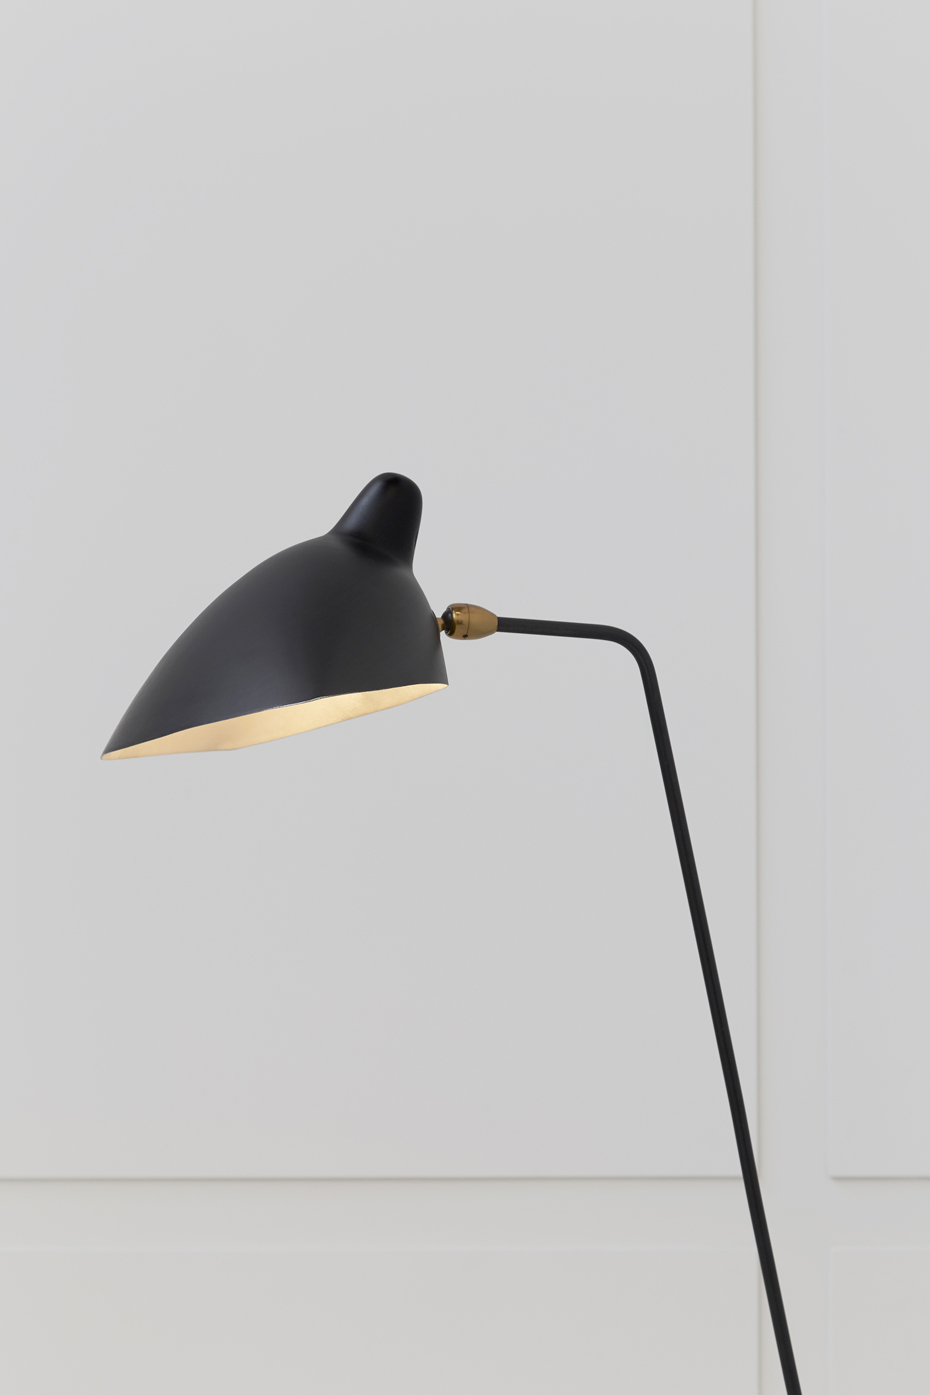 Serge Mouille, Simple floor lamp, vue 01